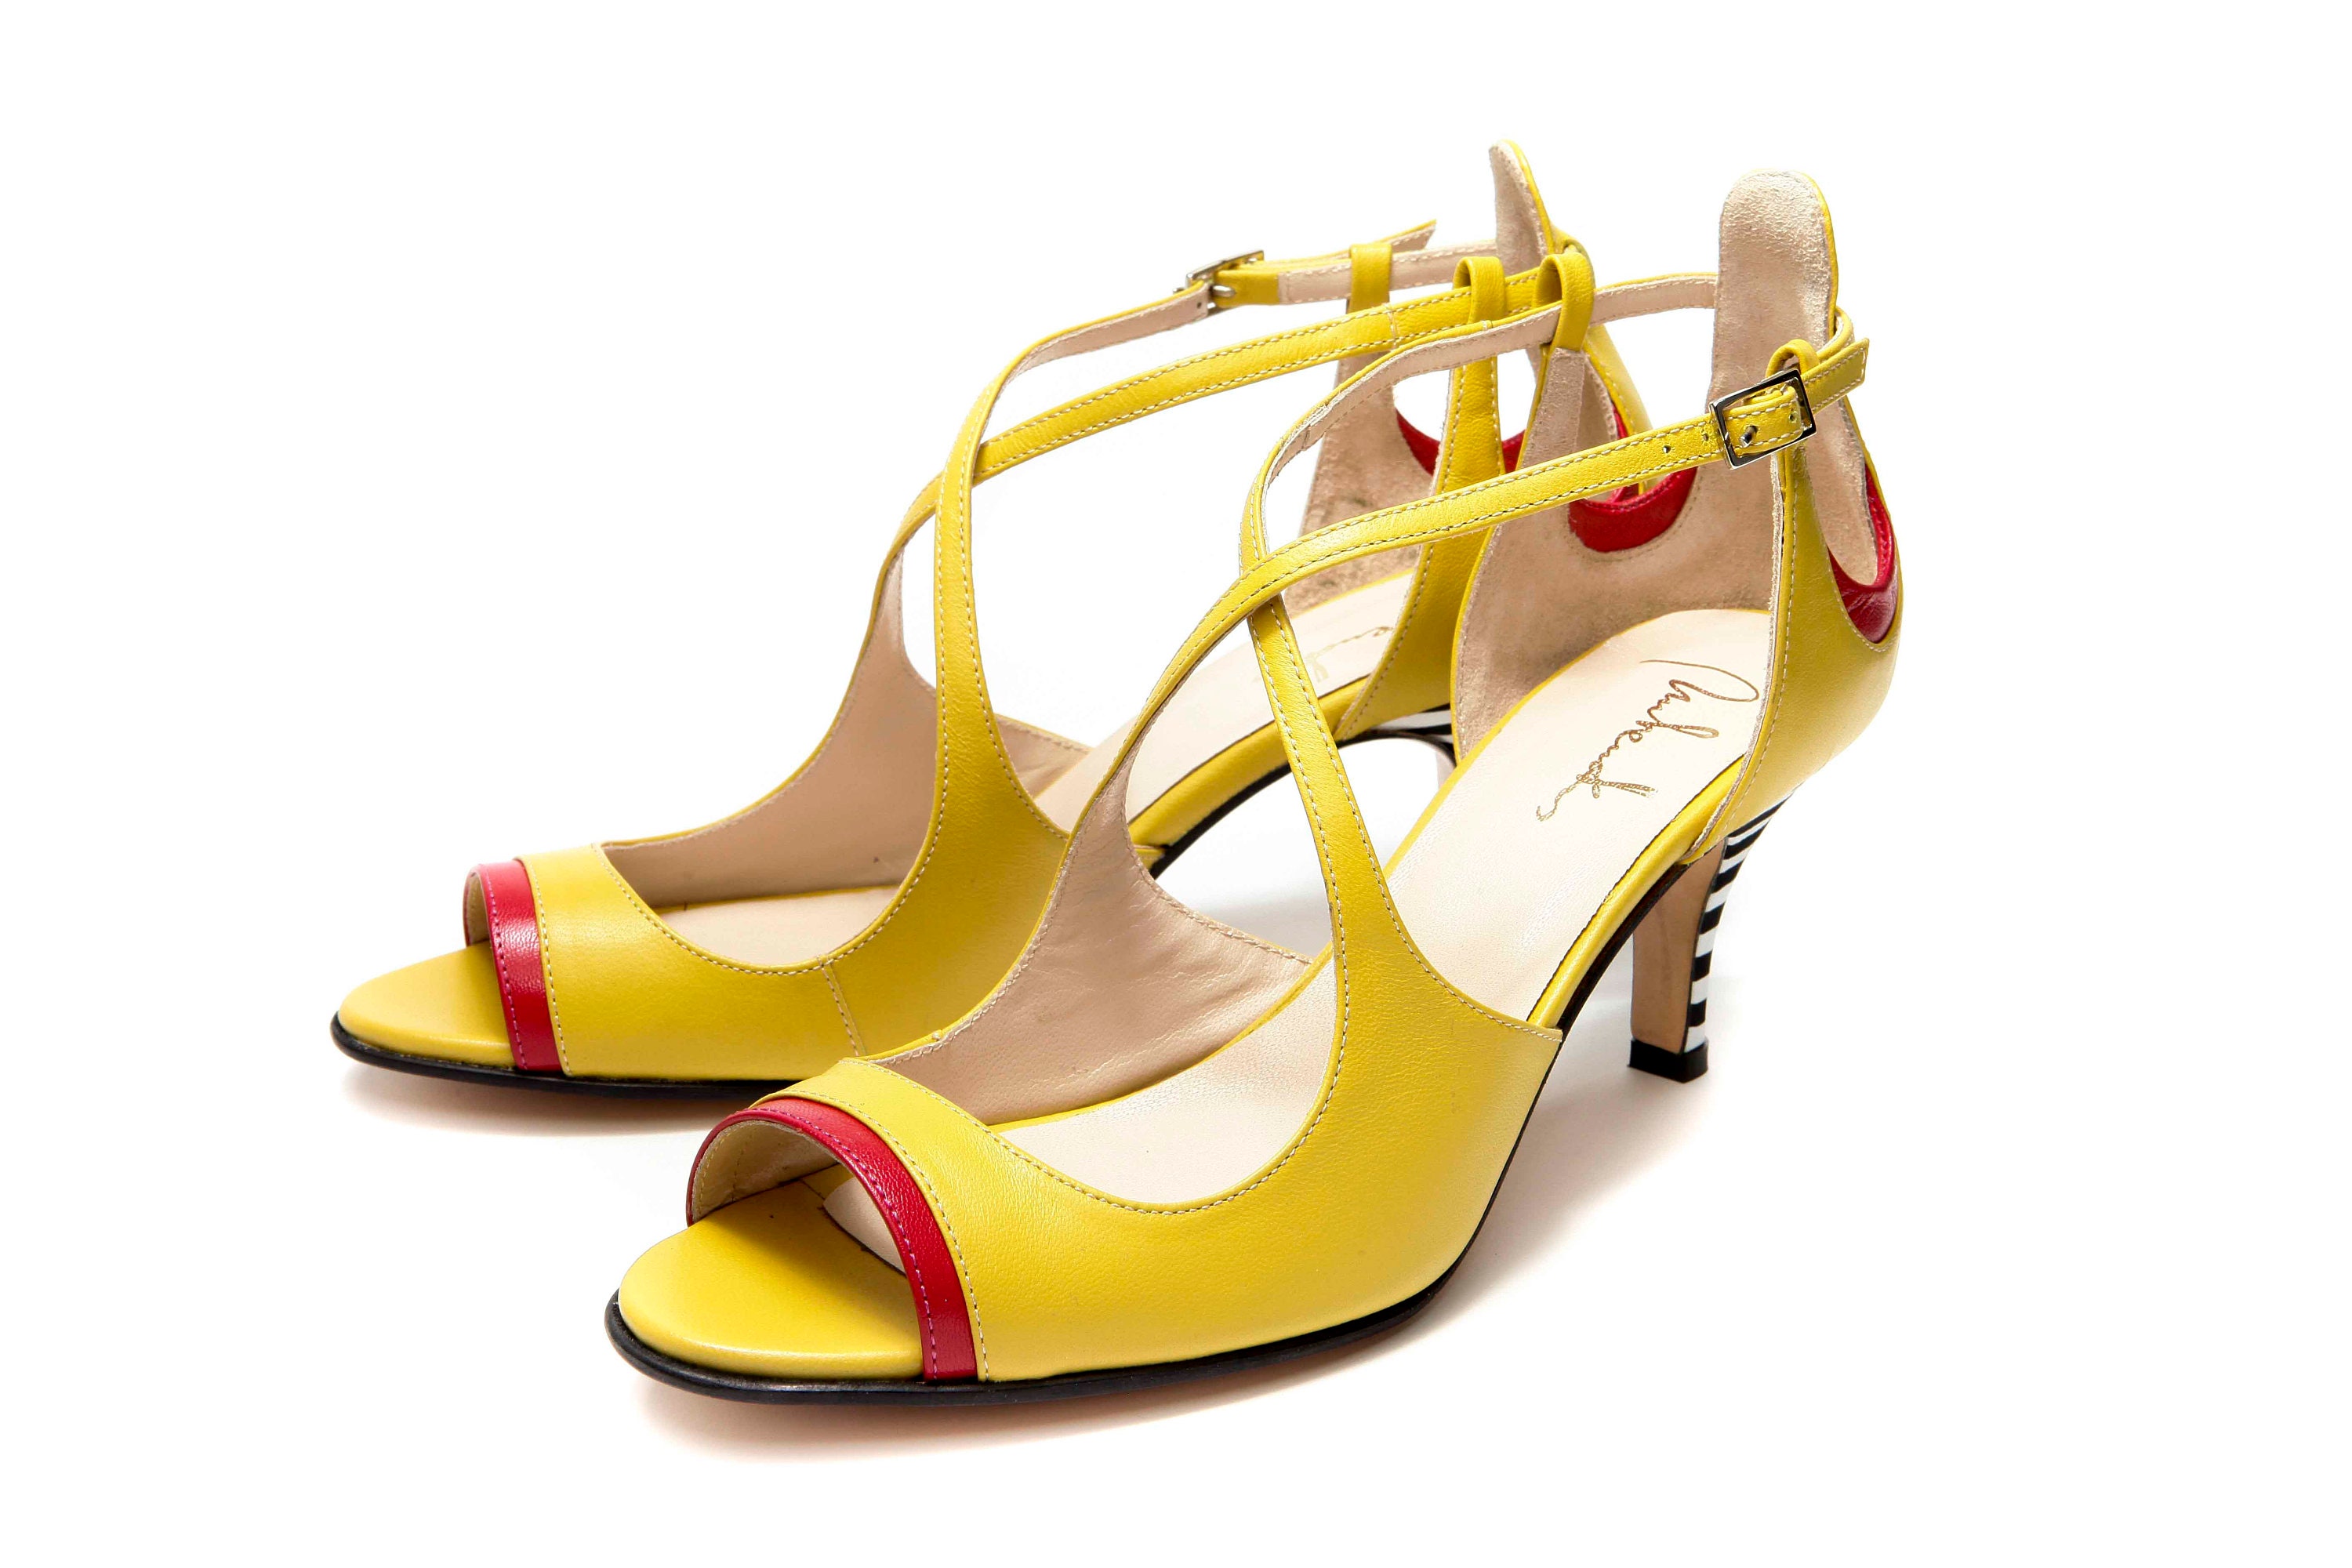 Yellow mid heel open toe sandals Criss cross sandals | Etsy